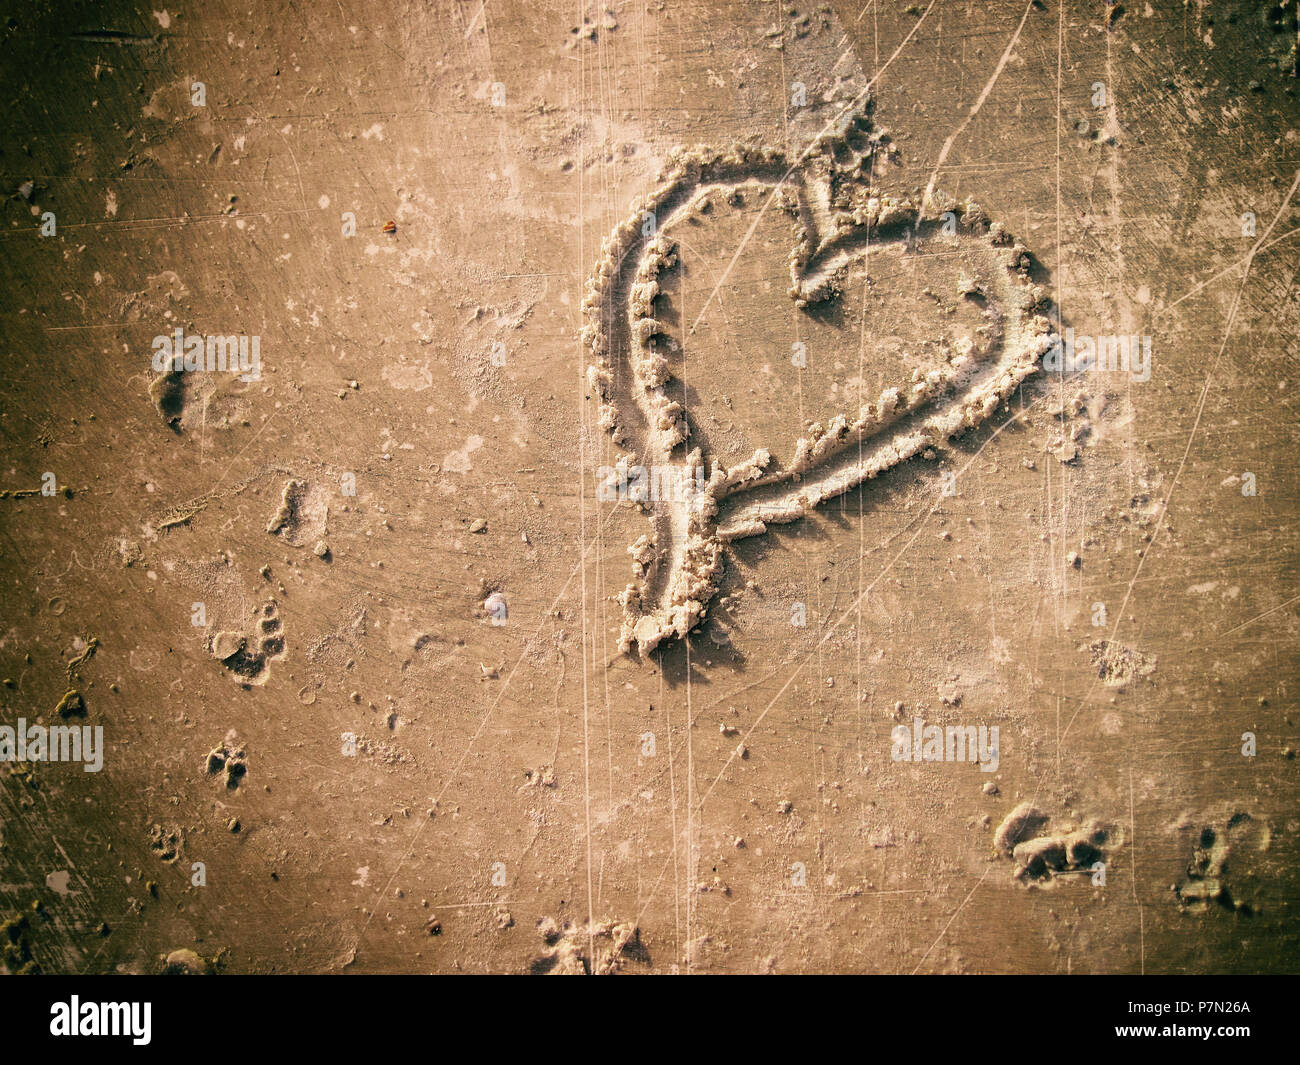 Un'immagine della forma di cuore il disegno sulla sabbia Foto Stock